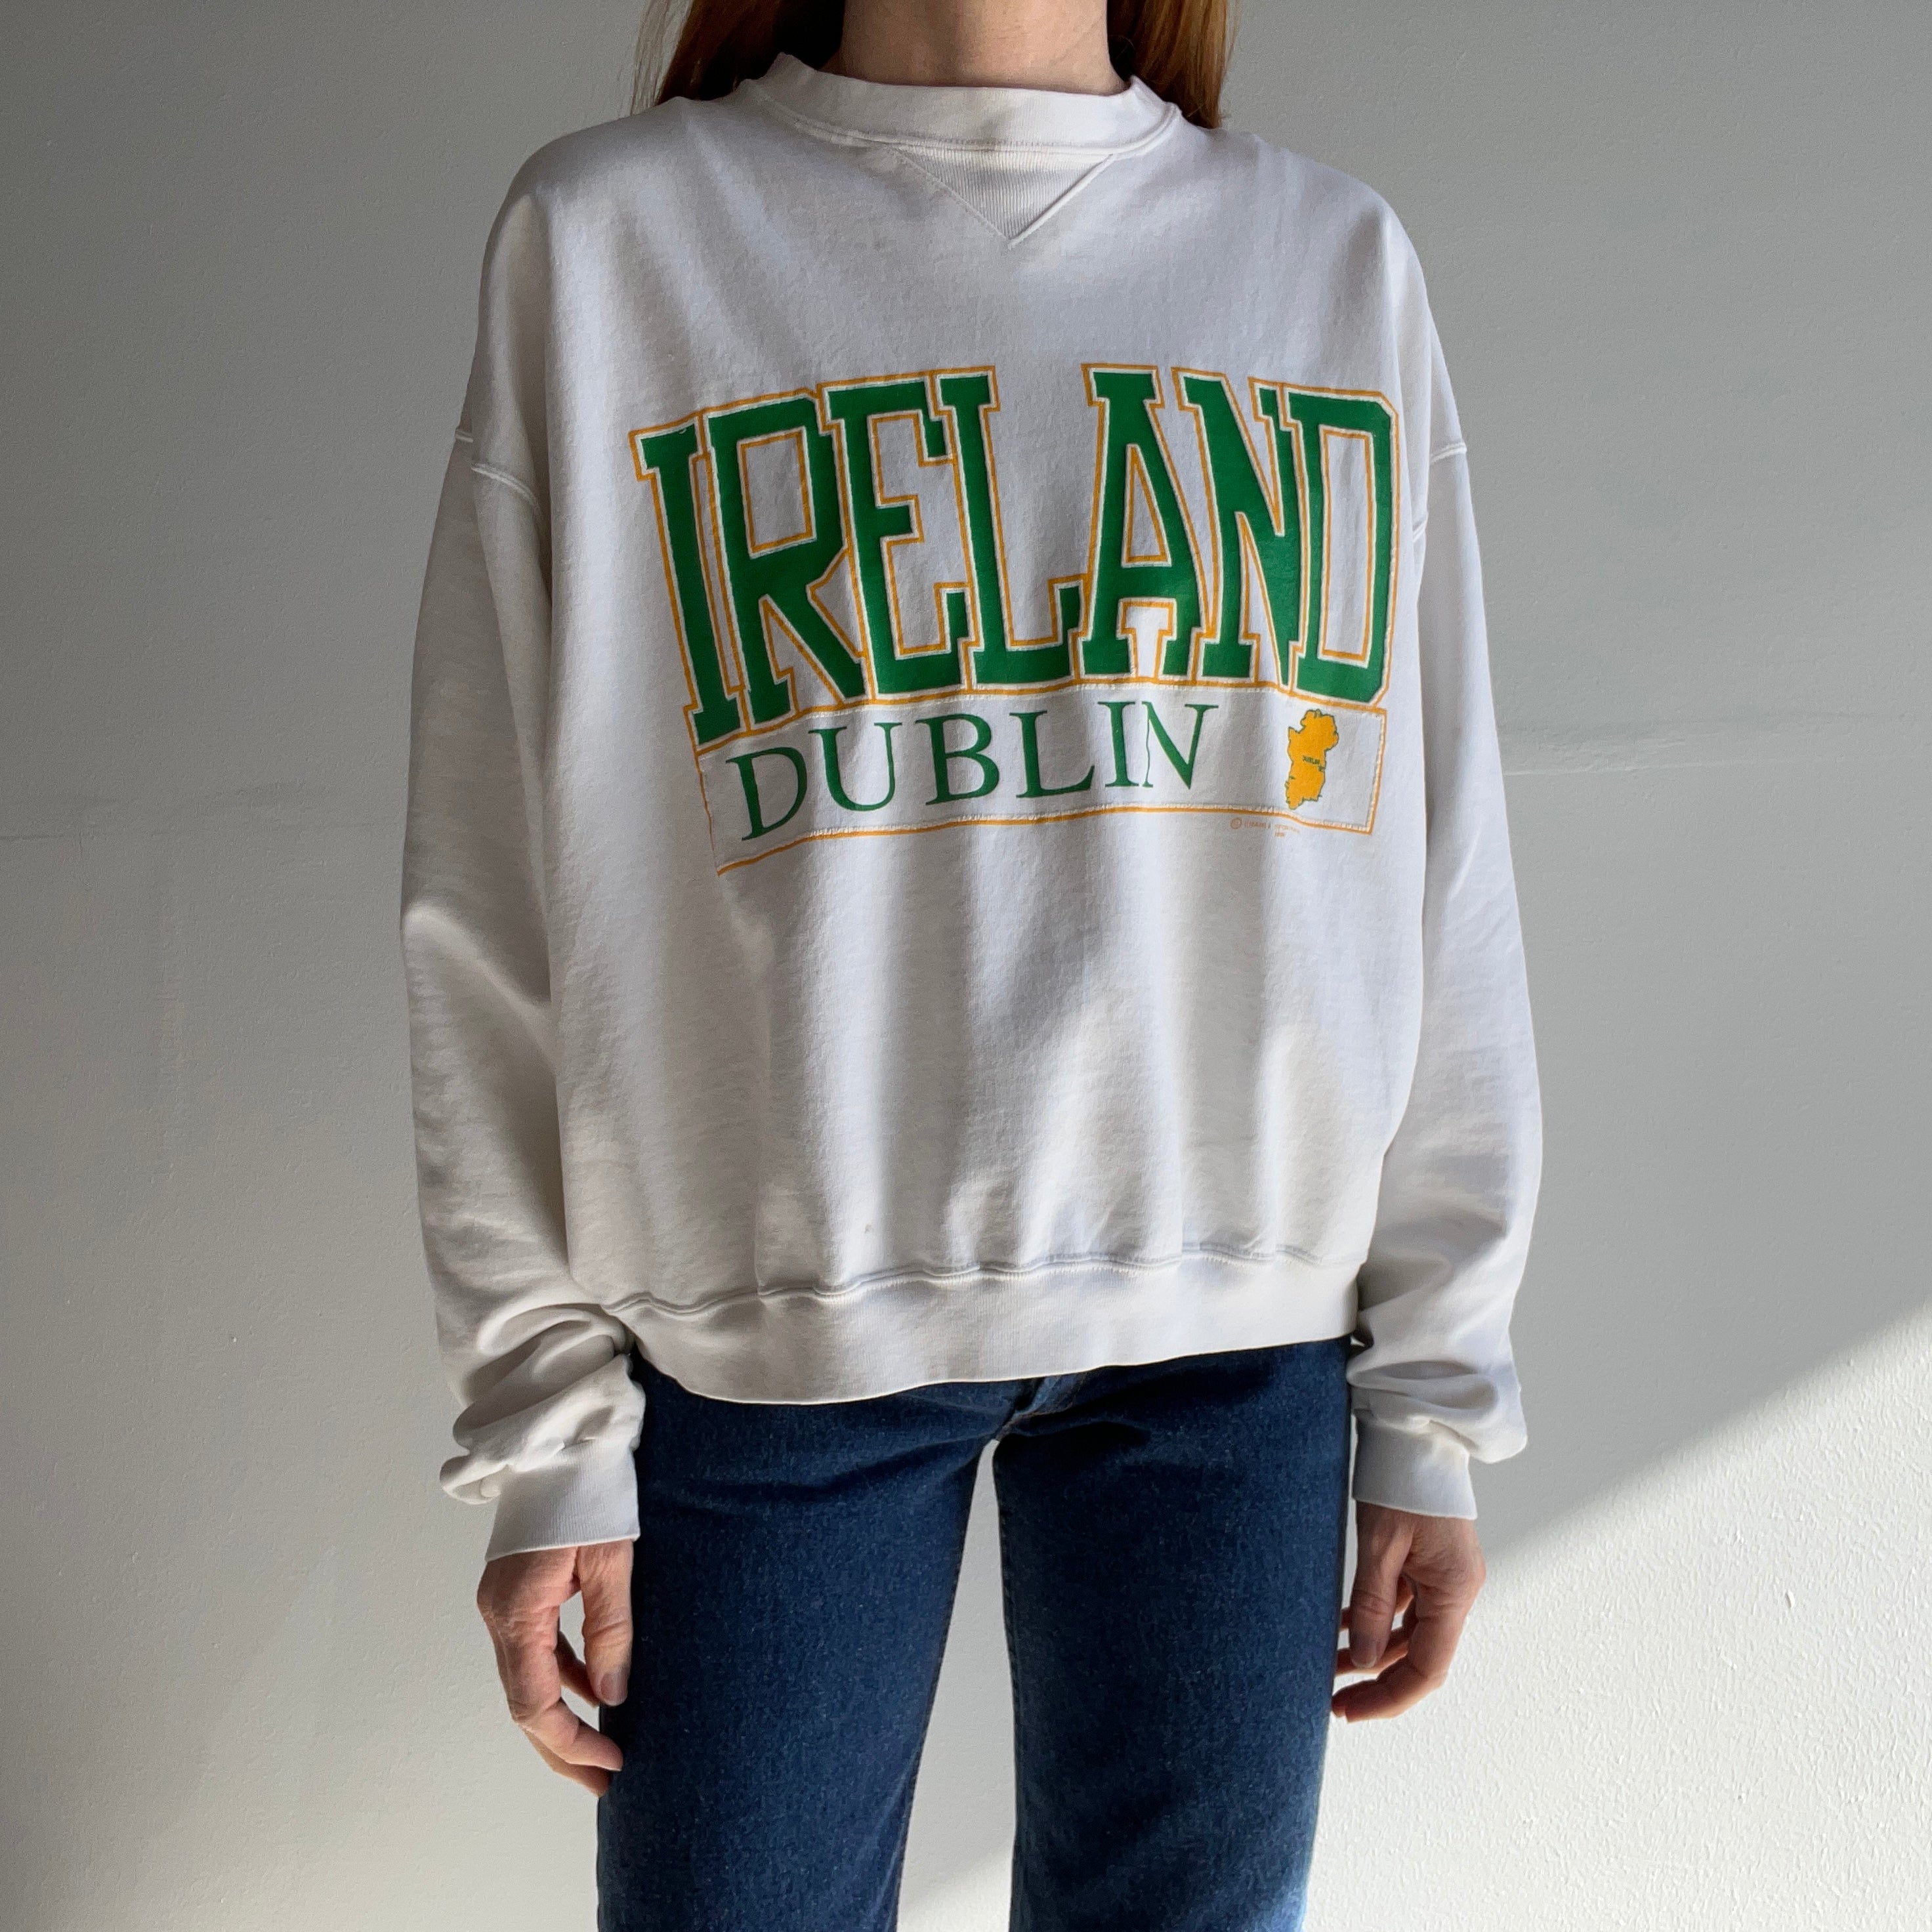 1990 Ireland Sweatshirt